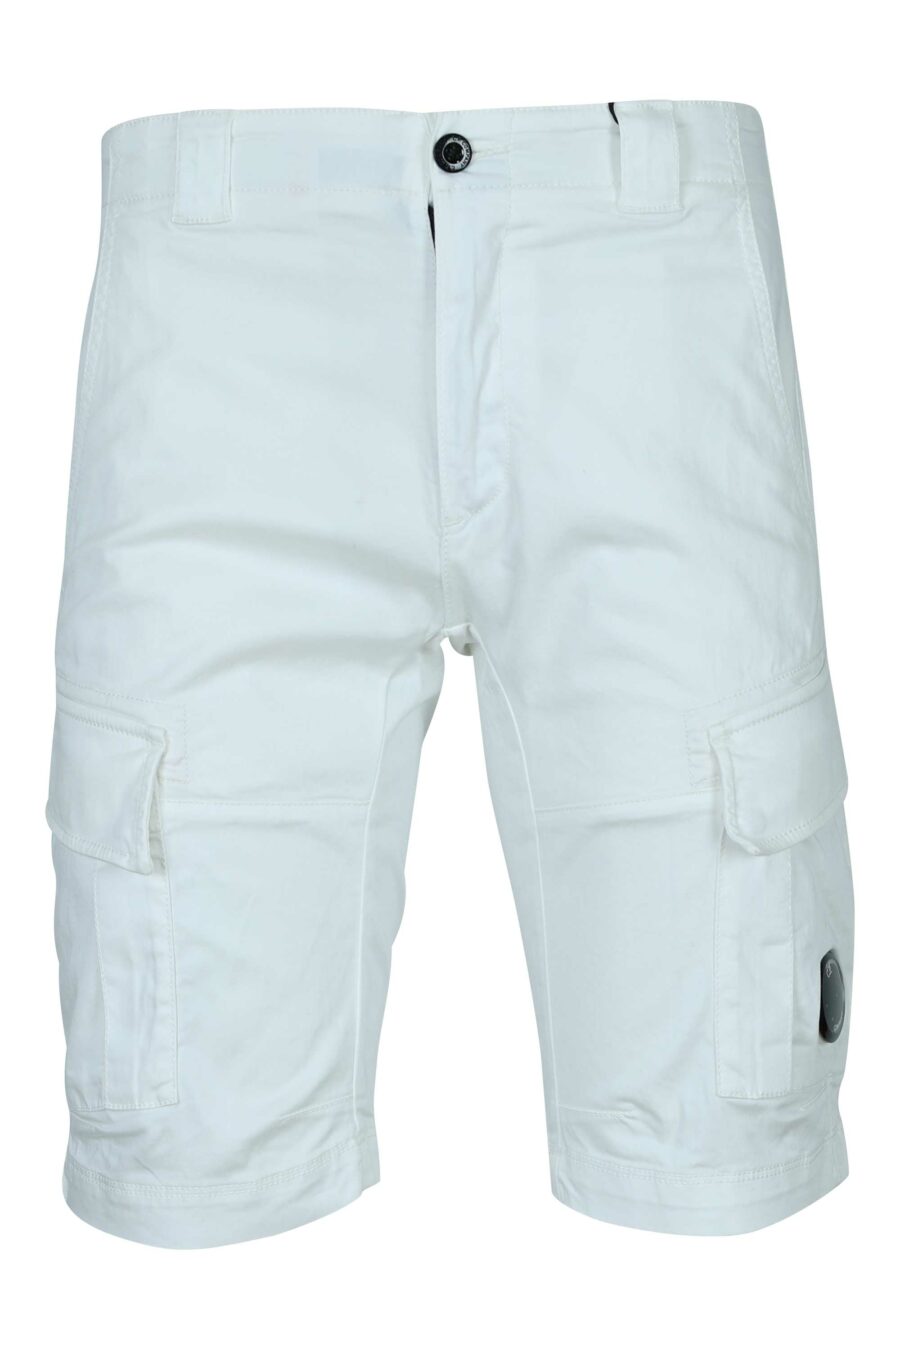 Pantalón corto blanco estilo cargo con minilogo lente - 7620943697735